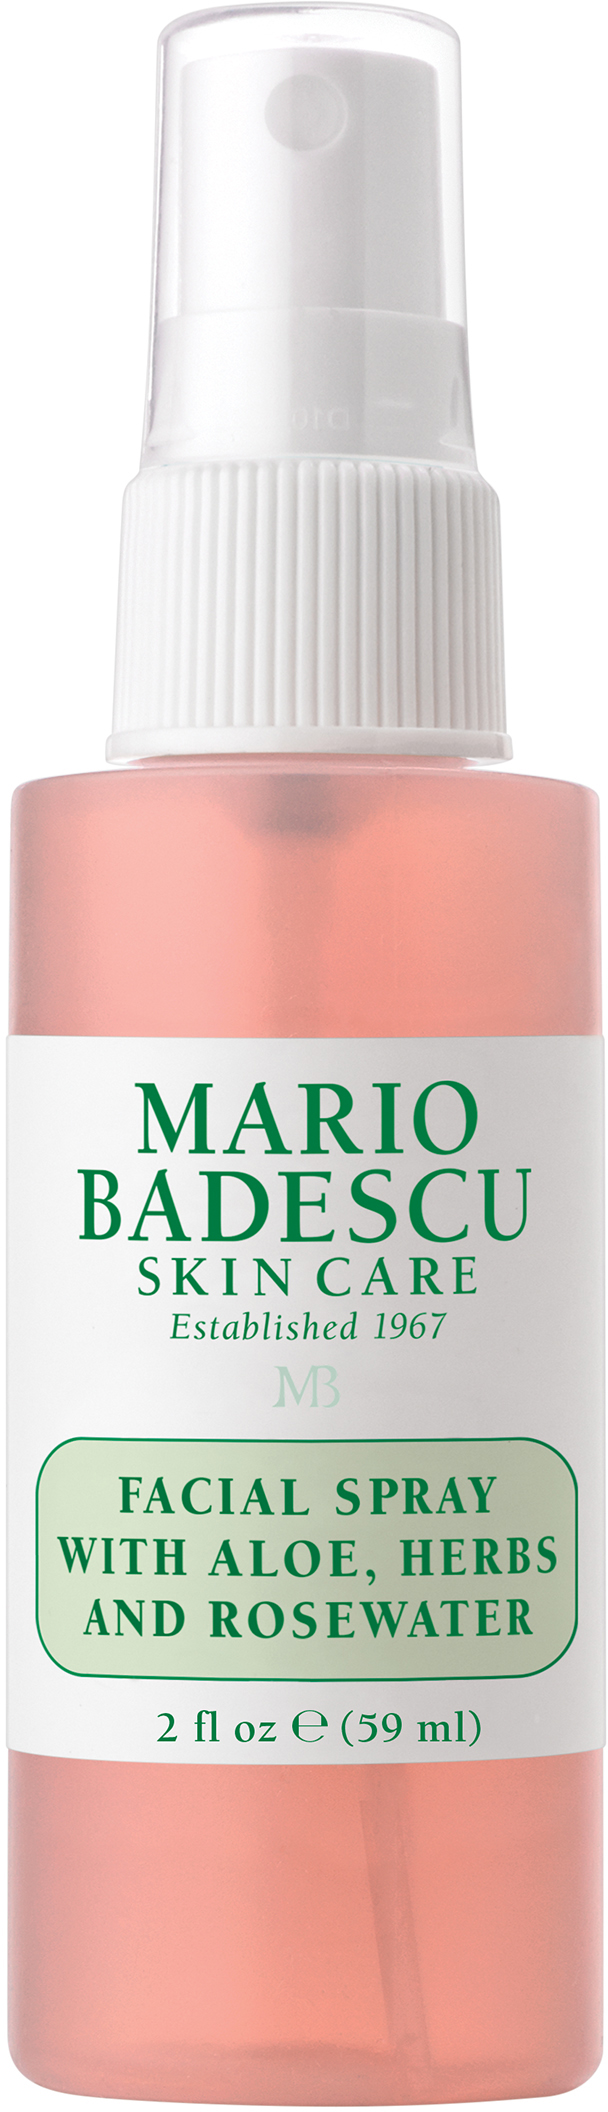 Mario Badescu Facial Spray W/ Aloe, Herbs & Rosewater 59 | lyko.com